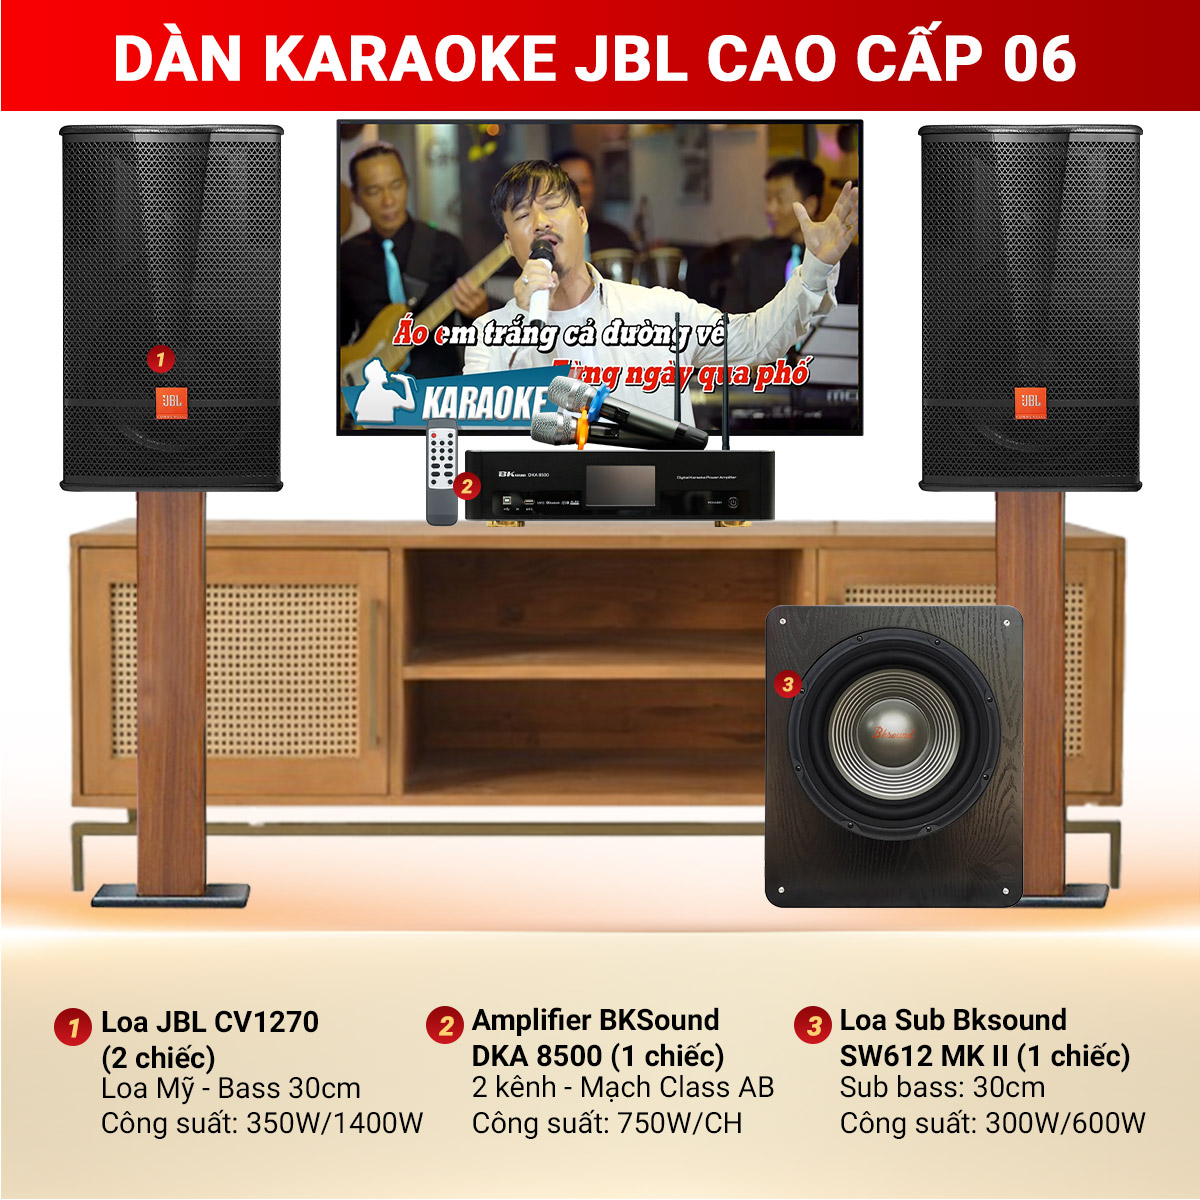 Dàn Karaoke JBL Cao Cấp 06